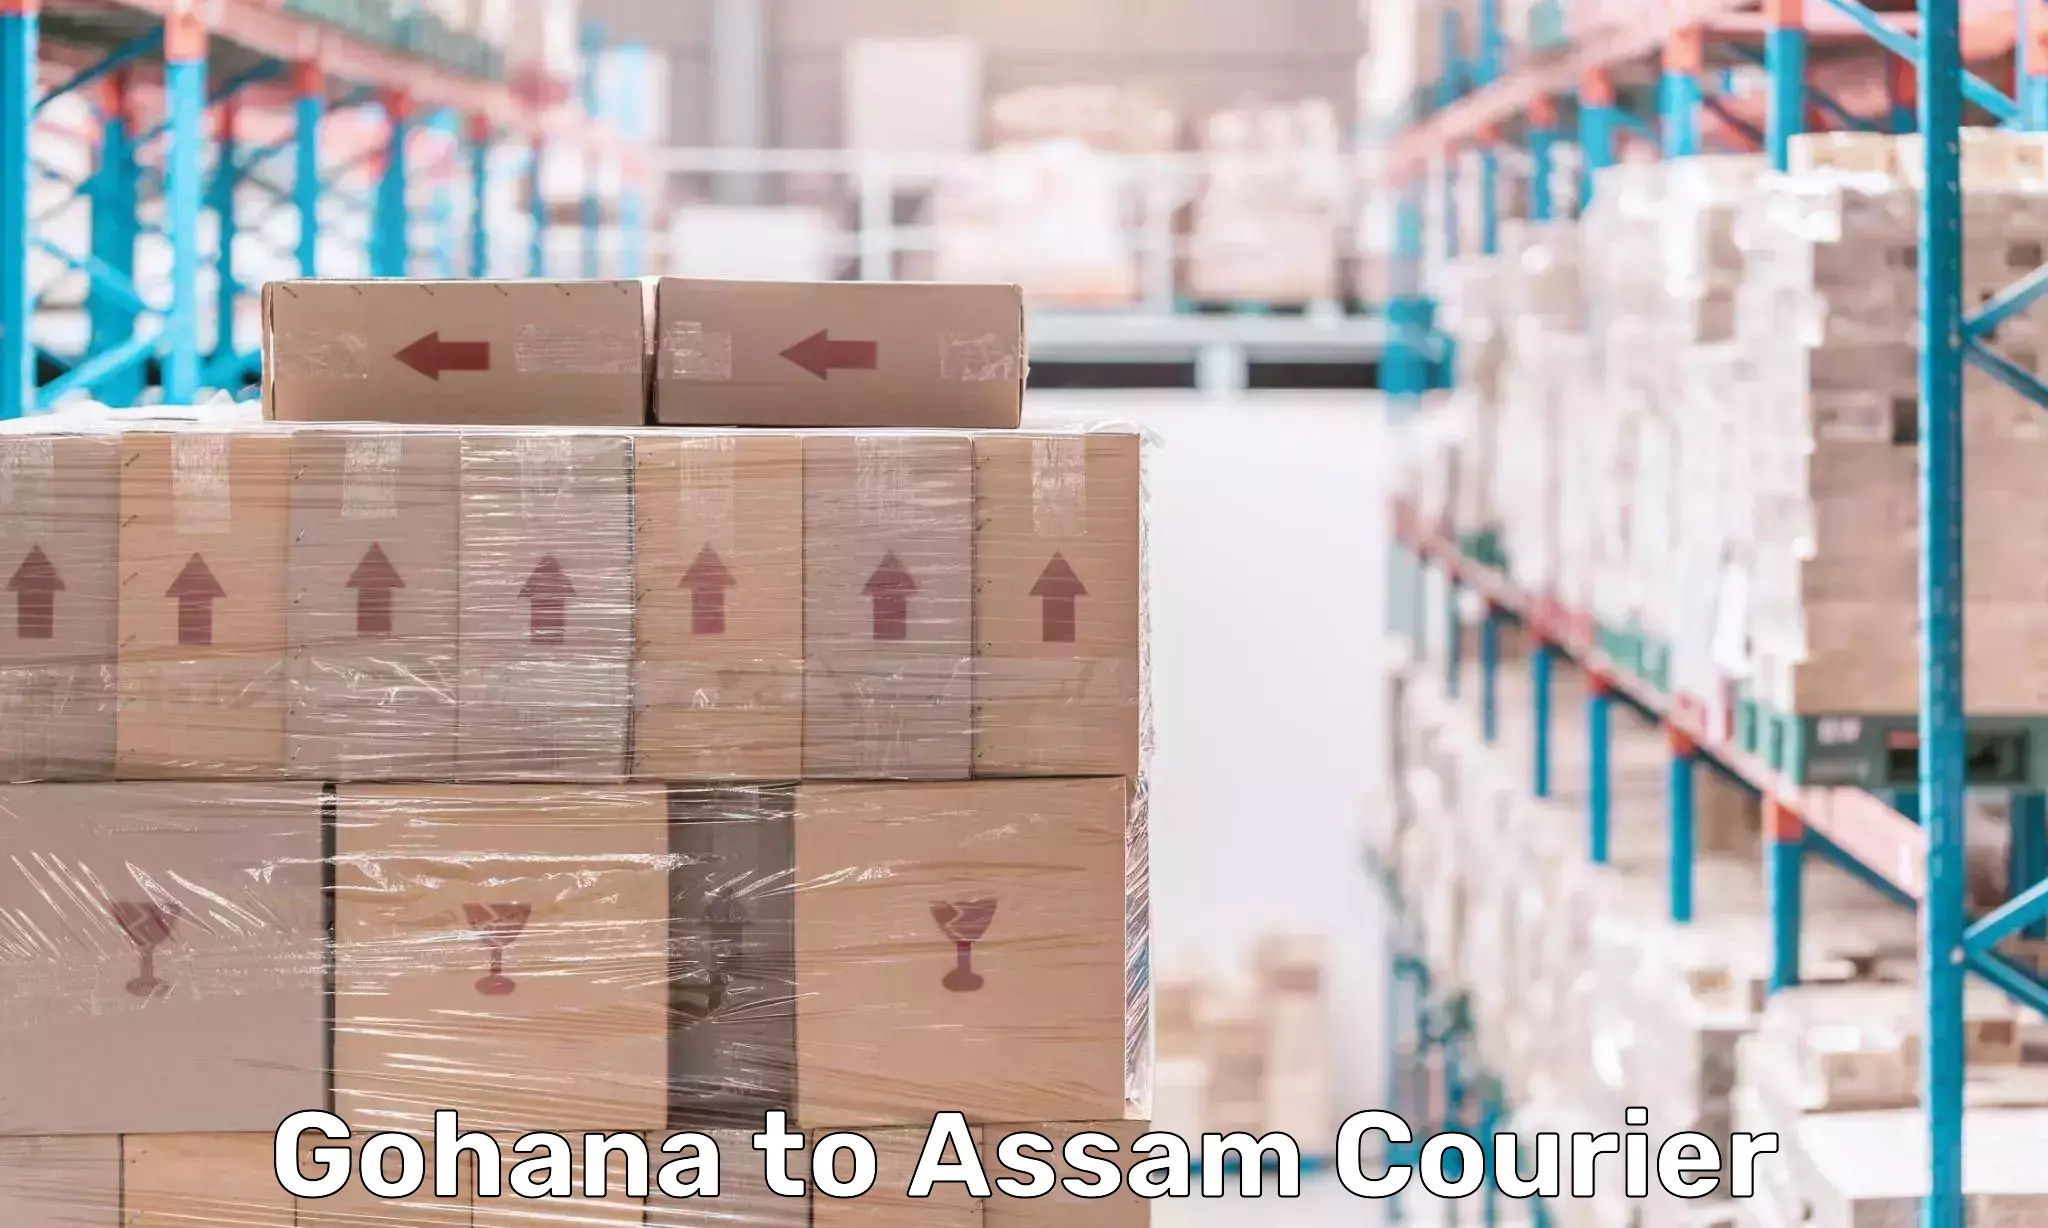 Digital courier platforms Gohana to Assam